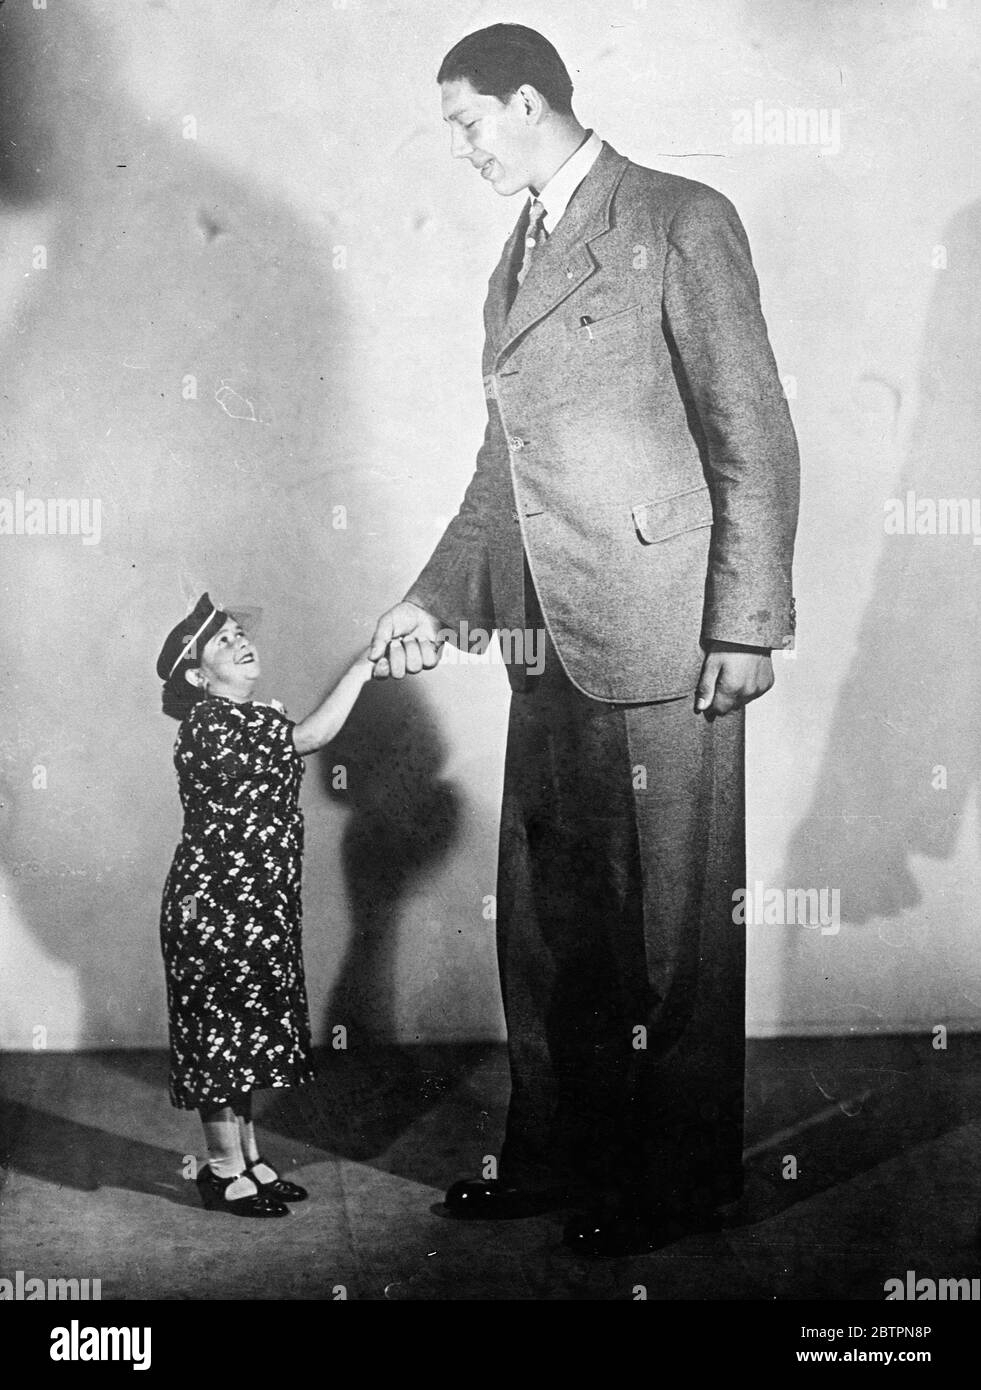 Amici lontani. Il gigante finlandese VÃ¤inÃ¶ Myllyrinne (27 febbraio 1909 - 1963) incontra la famosa nana austriaca Elisabeth, che si trova a soli 1/2 metri a Parigi. 13 giugno 1937 Foto Stock